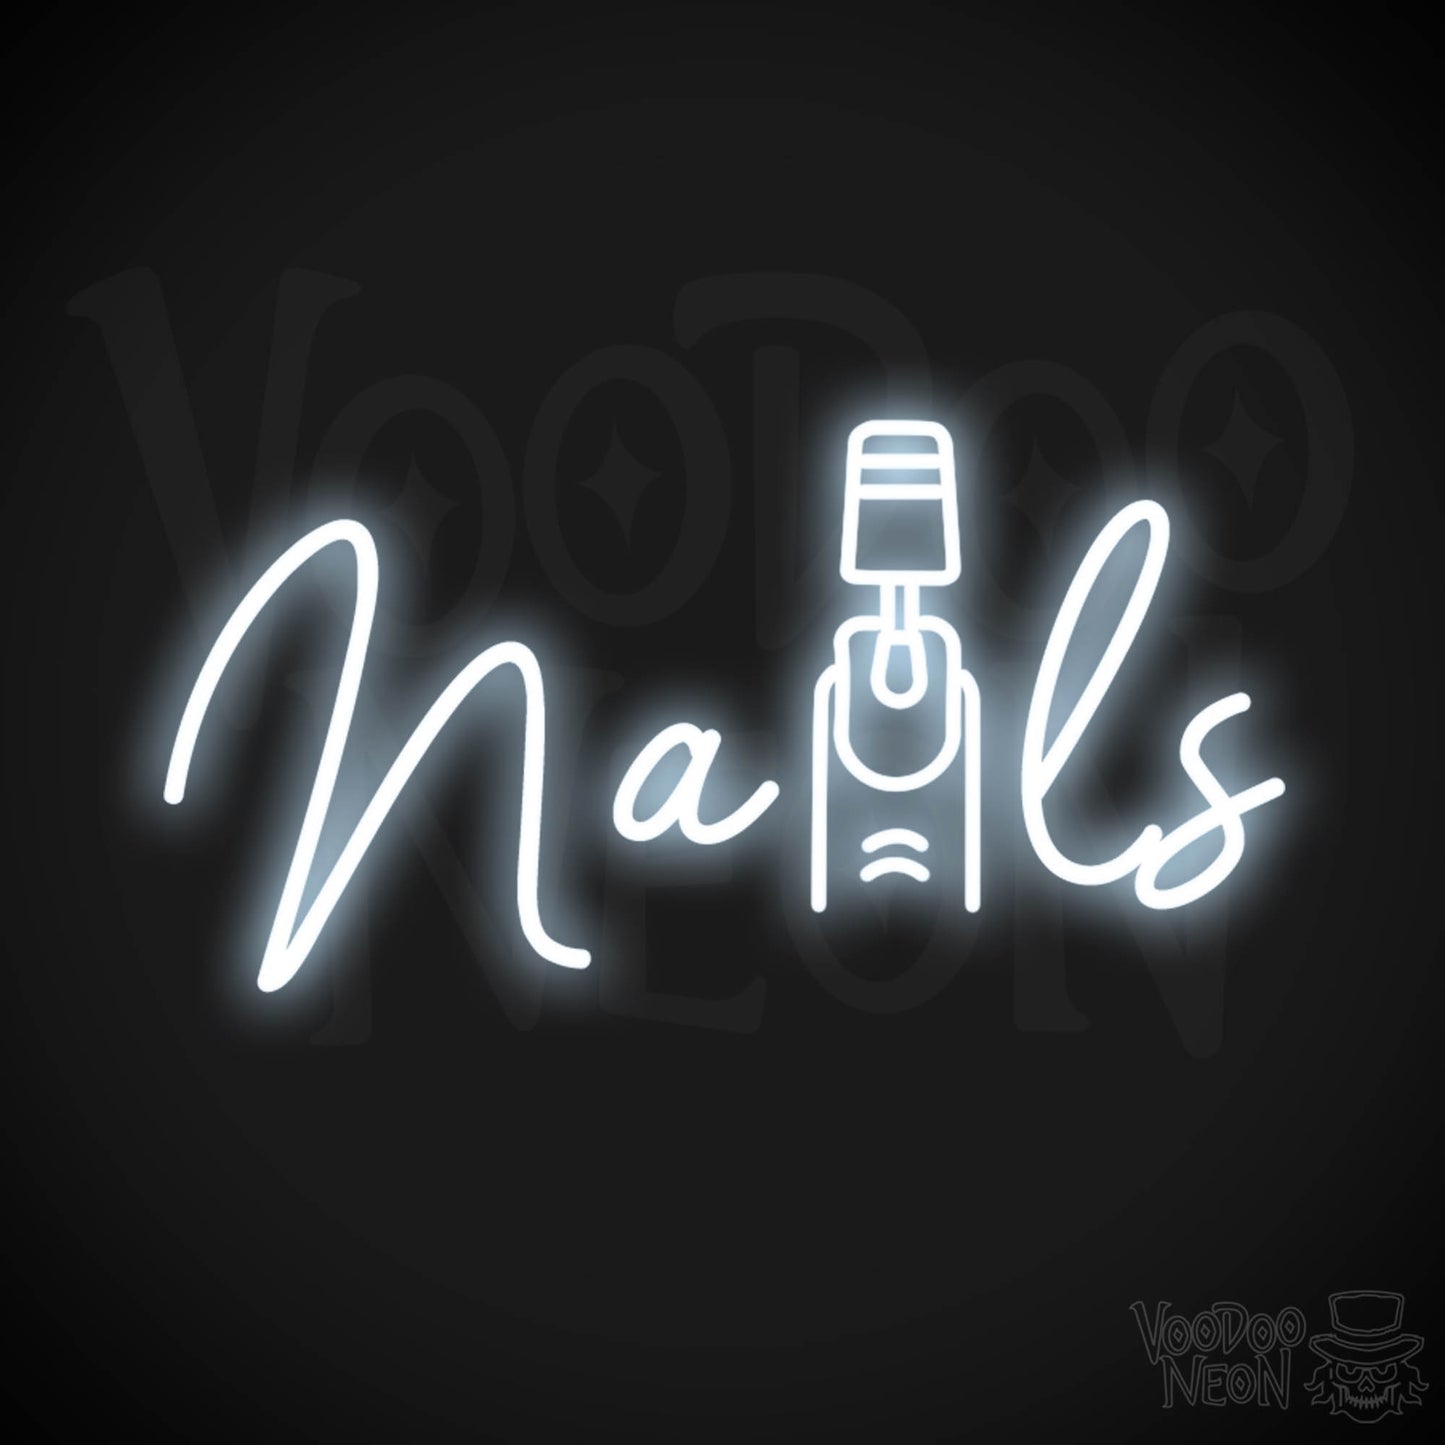 Nails Neon Sign - Nail Salon Sign - Neon Nails Sign - Nail Salon Wall Art - Color Cool White